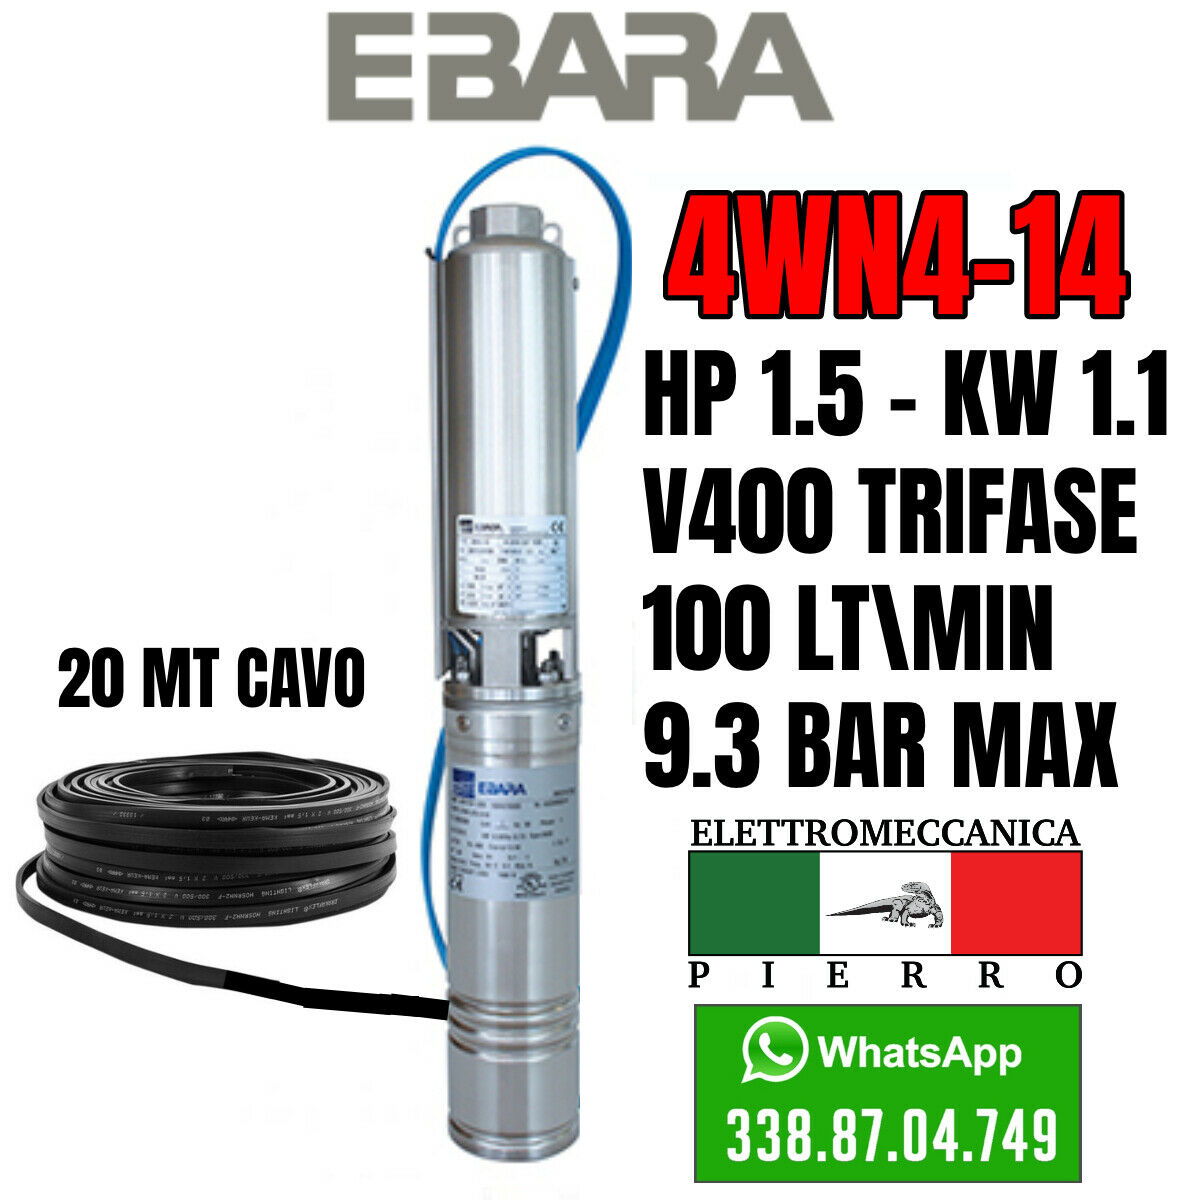 miniatura 23  - POMPA SOMMERSA EBARA 4WN4-14 HP1.5 100LT/MIN 9.3BAR MAX 4GS11 LOWARA COMPATIBILE